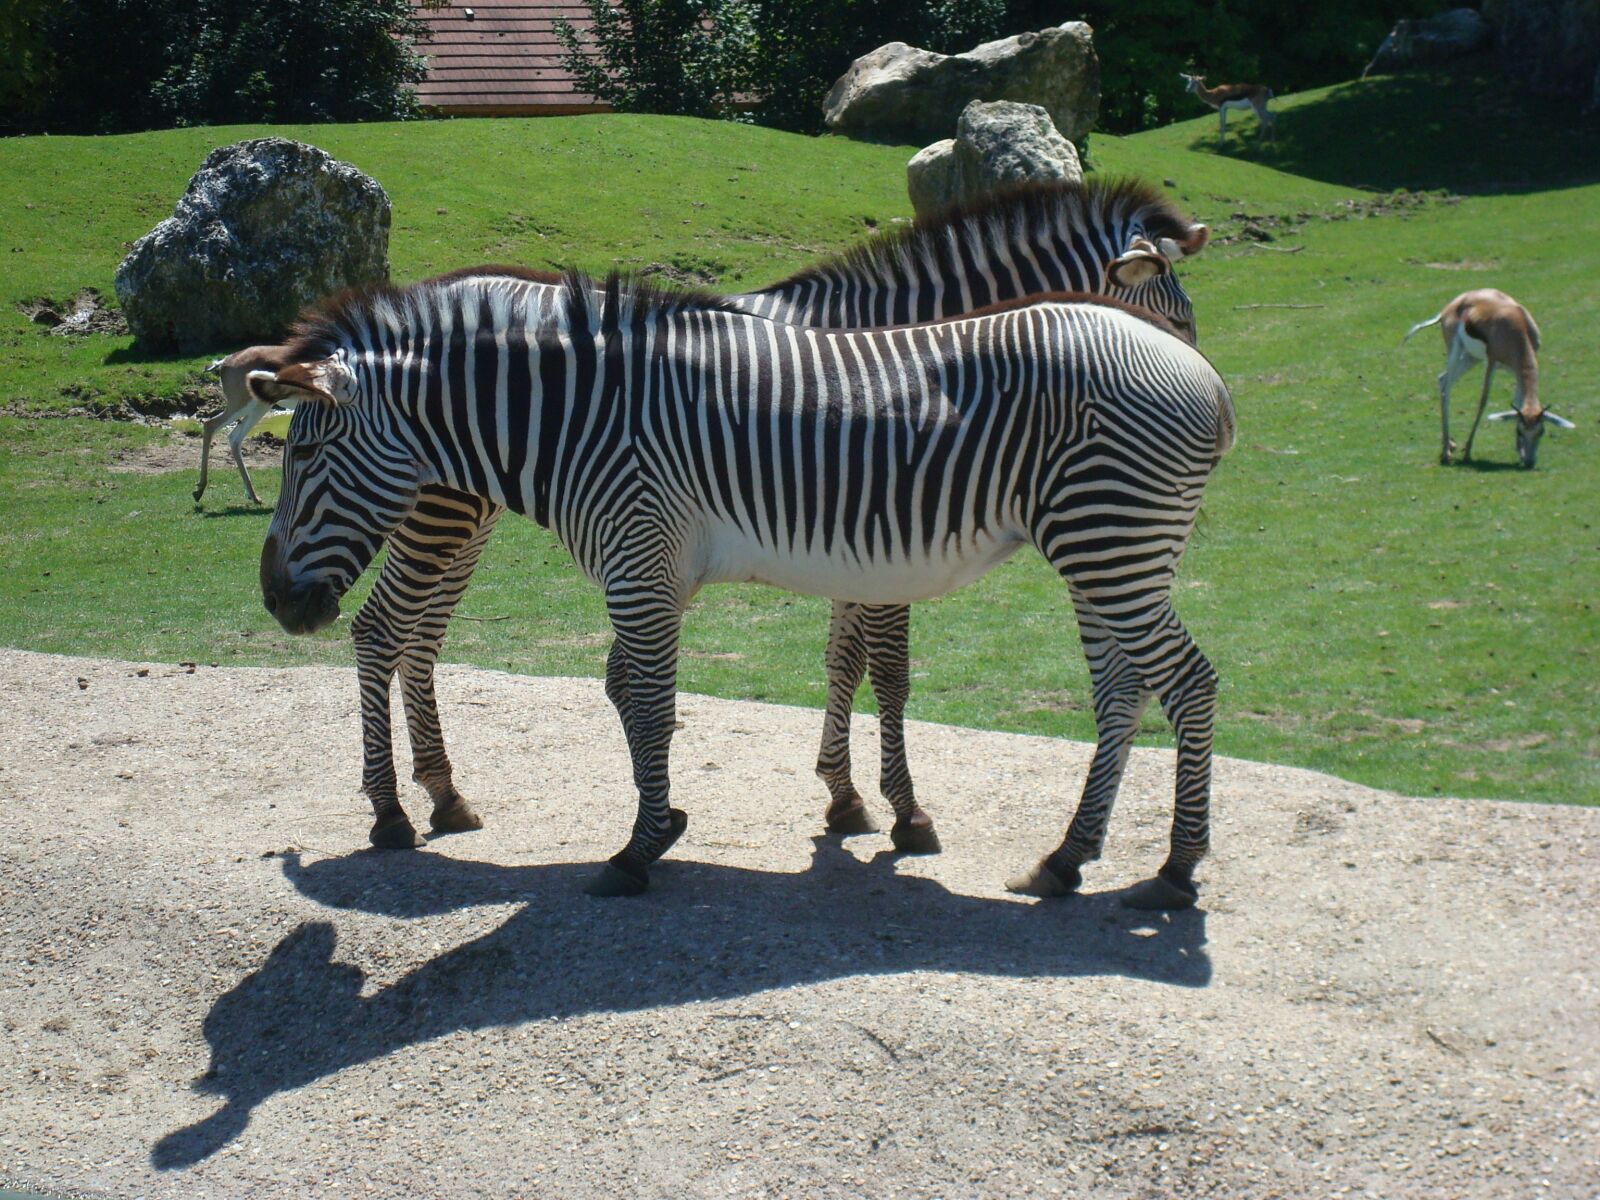 Sony DSC-W85 sample photo. Zebra, animal, zoo photography